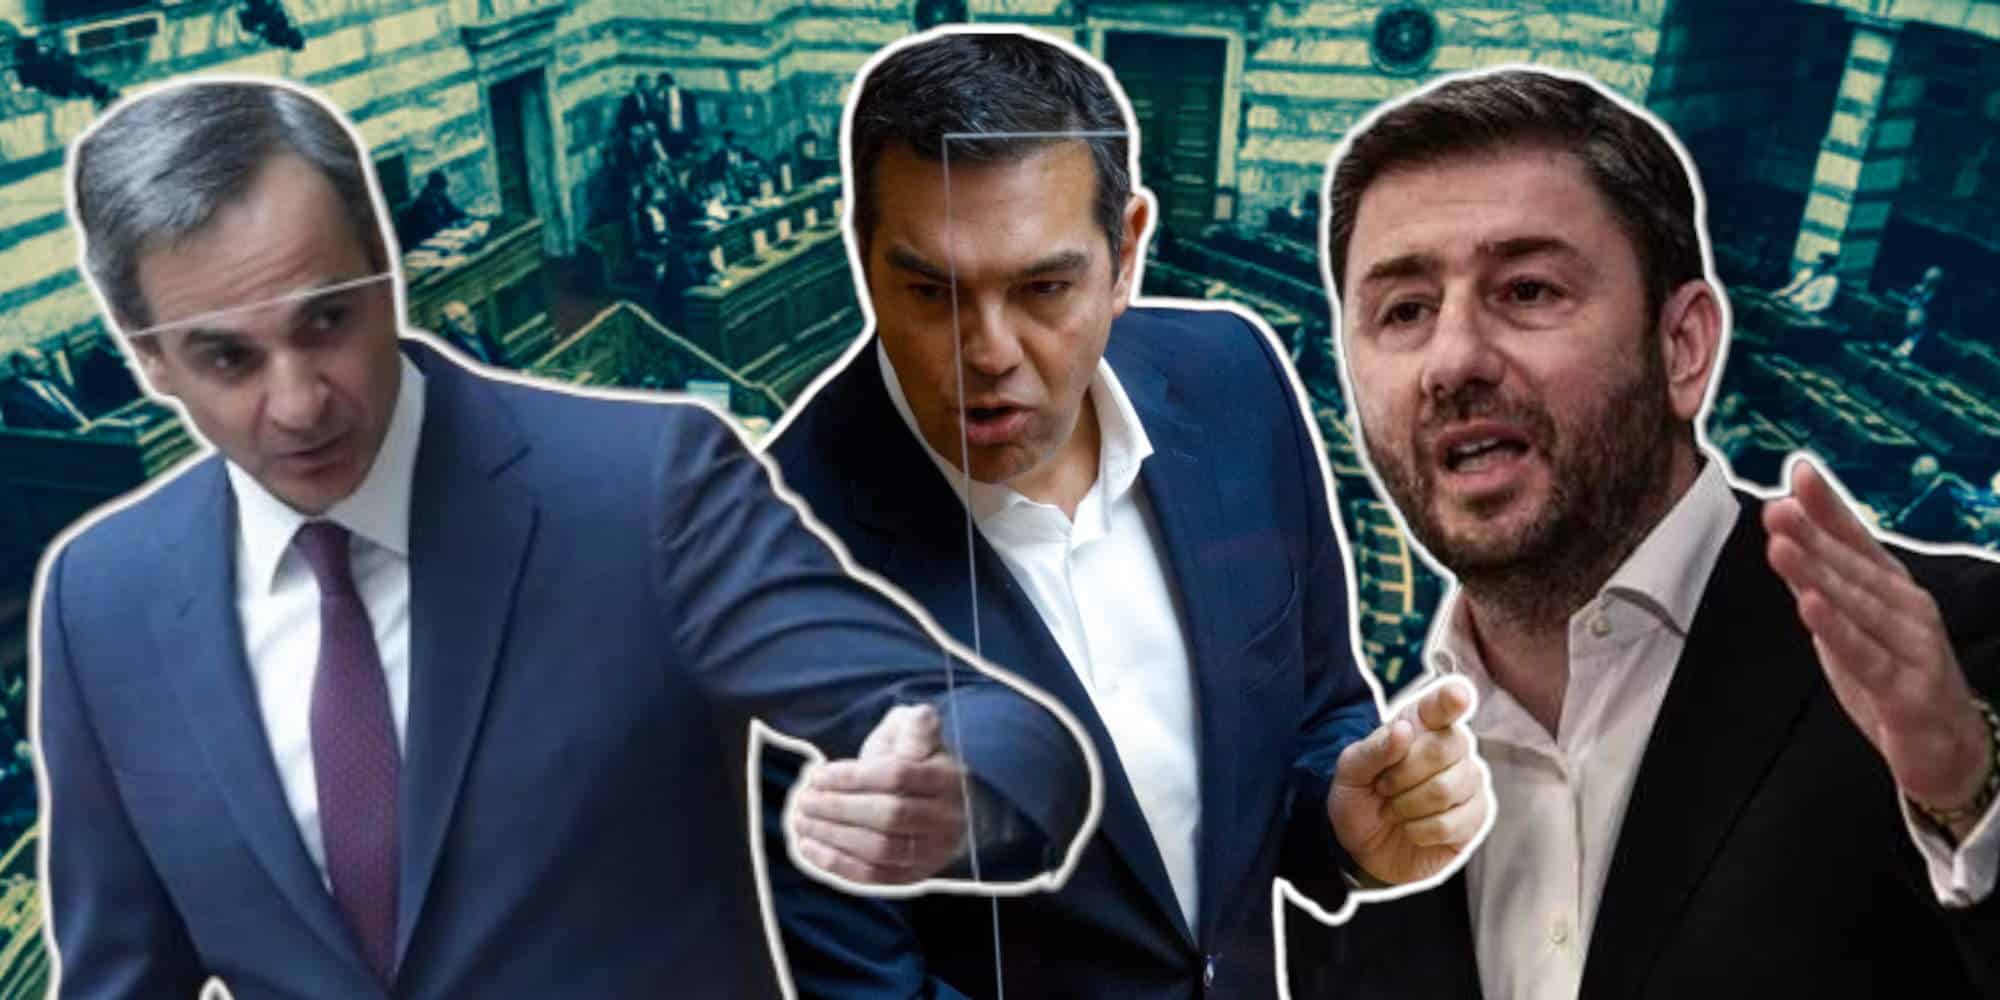 Κυριάκος Μητσοτάκης, Αλέξης Τσίπρας και Νίκος Ανδρουλάκης στη Βουλή